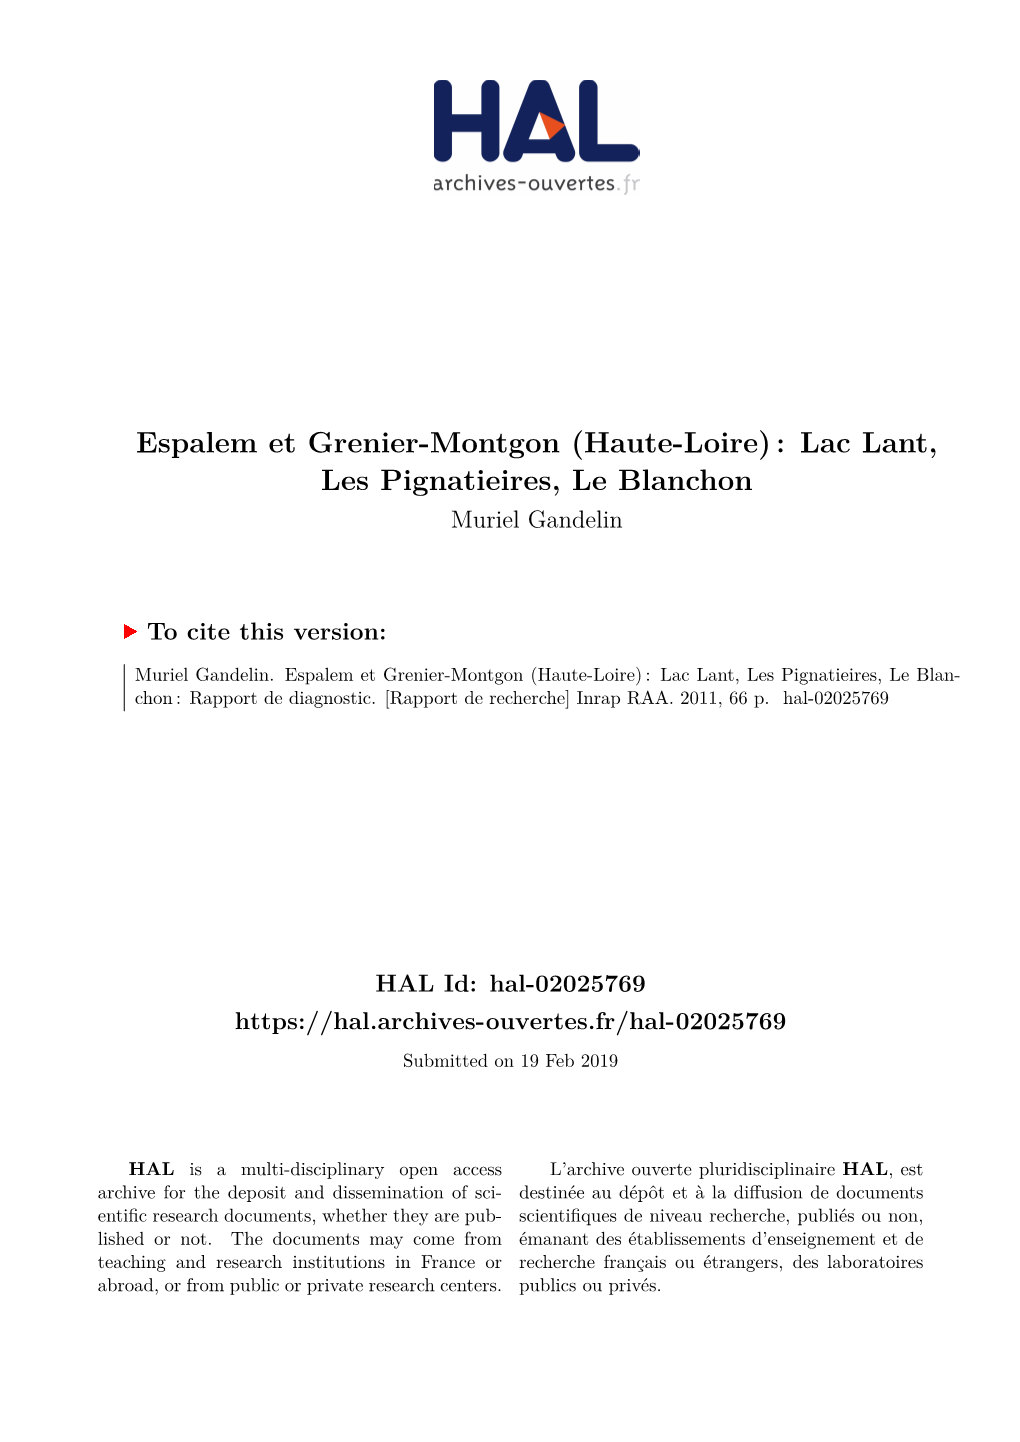 Espalem Et Grenier-Montgon (Haute-Loire) : Lac Lant, Les Pignatieires, Le Blanchon Muriel Gandelin